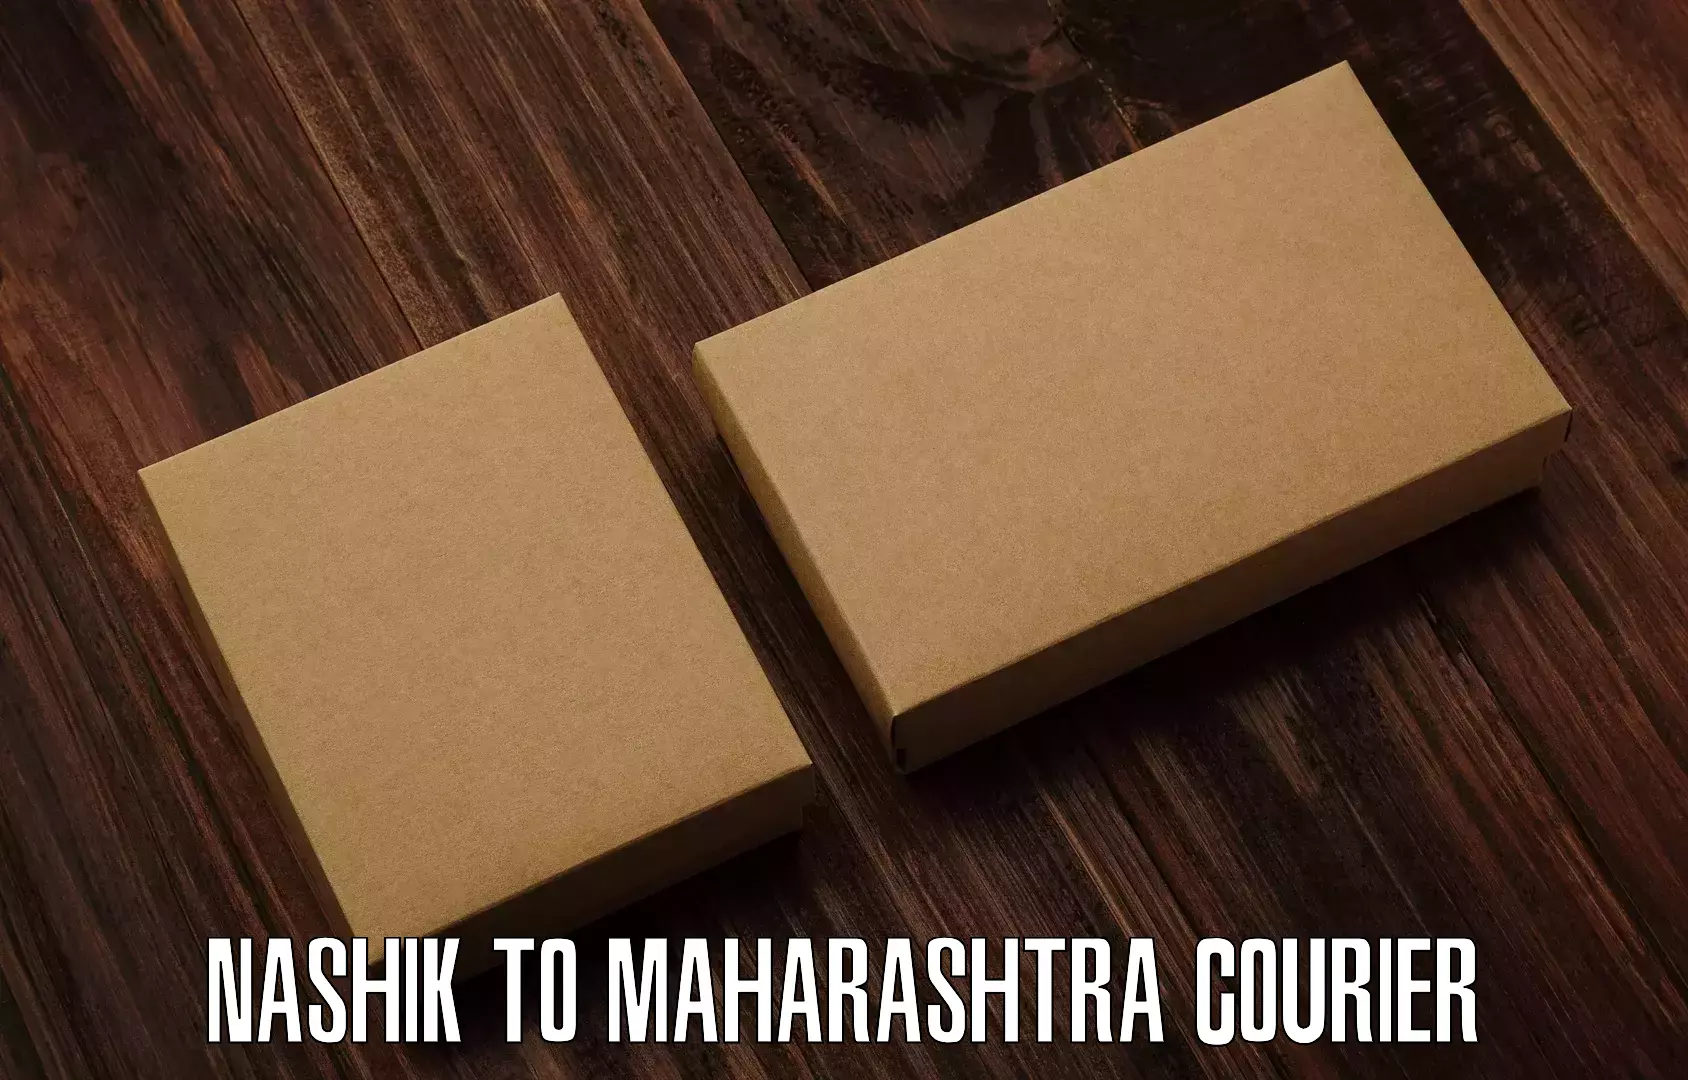 Courier service innovation Nashik to Maharashtra